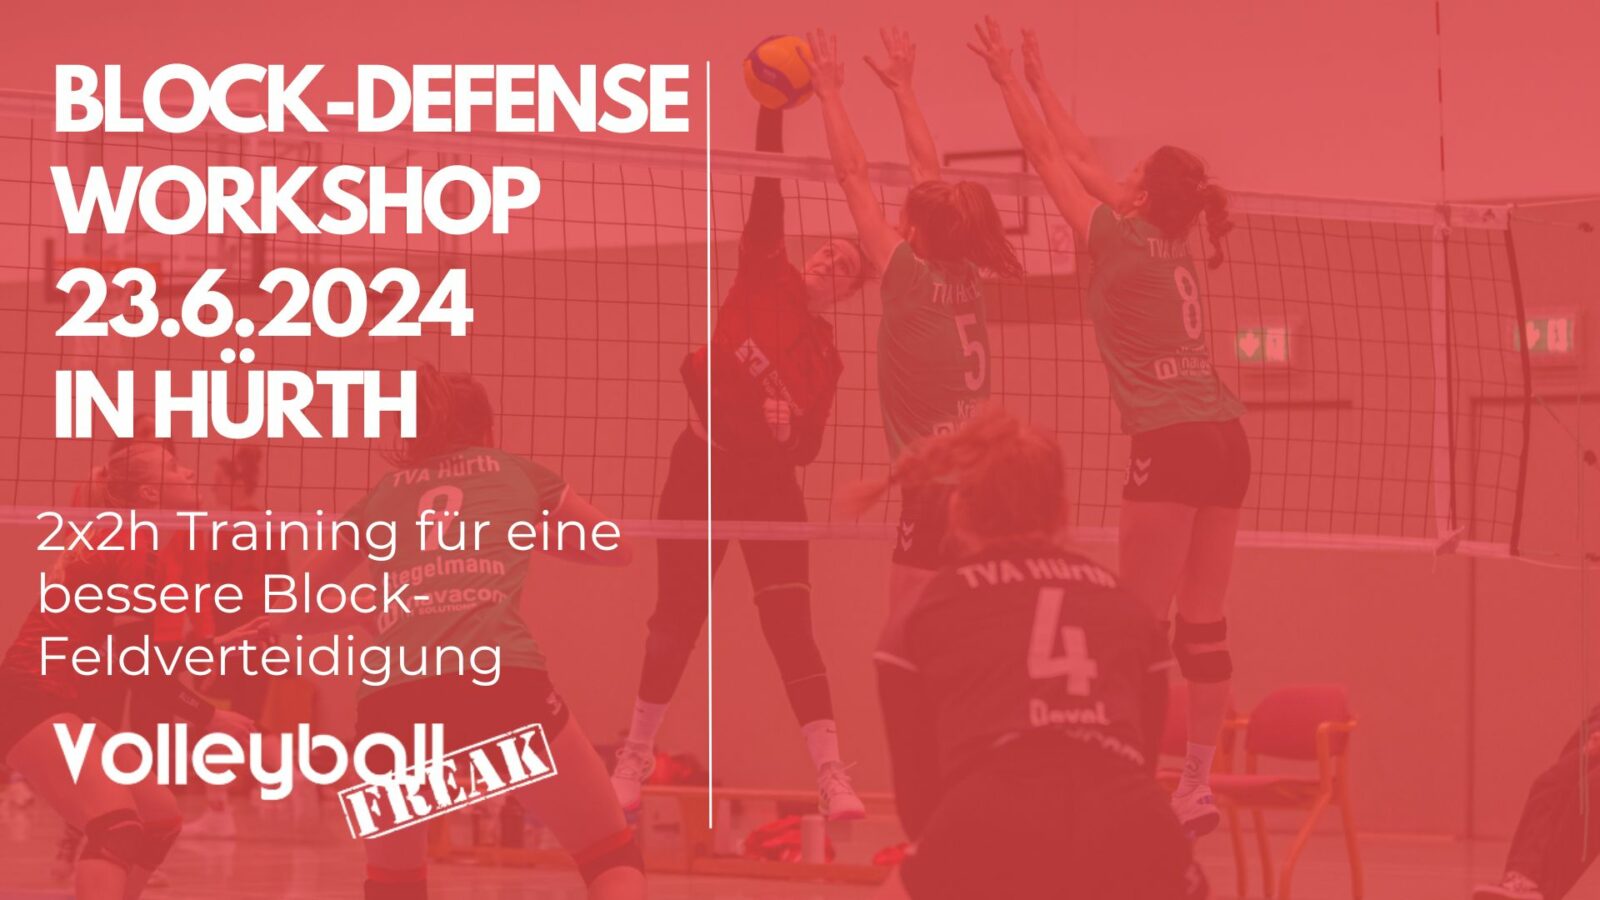 Block-Defense-Workshop am 23.6.2024 in Hürth